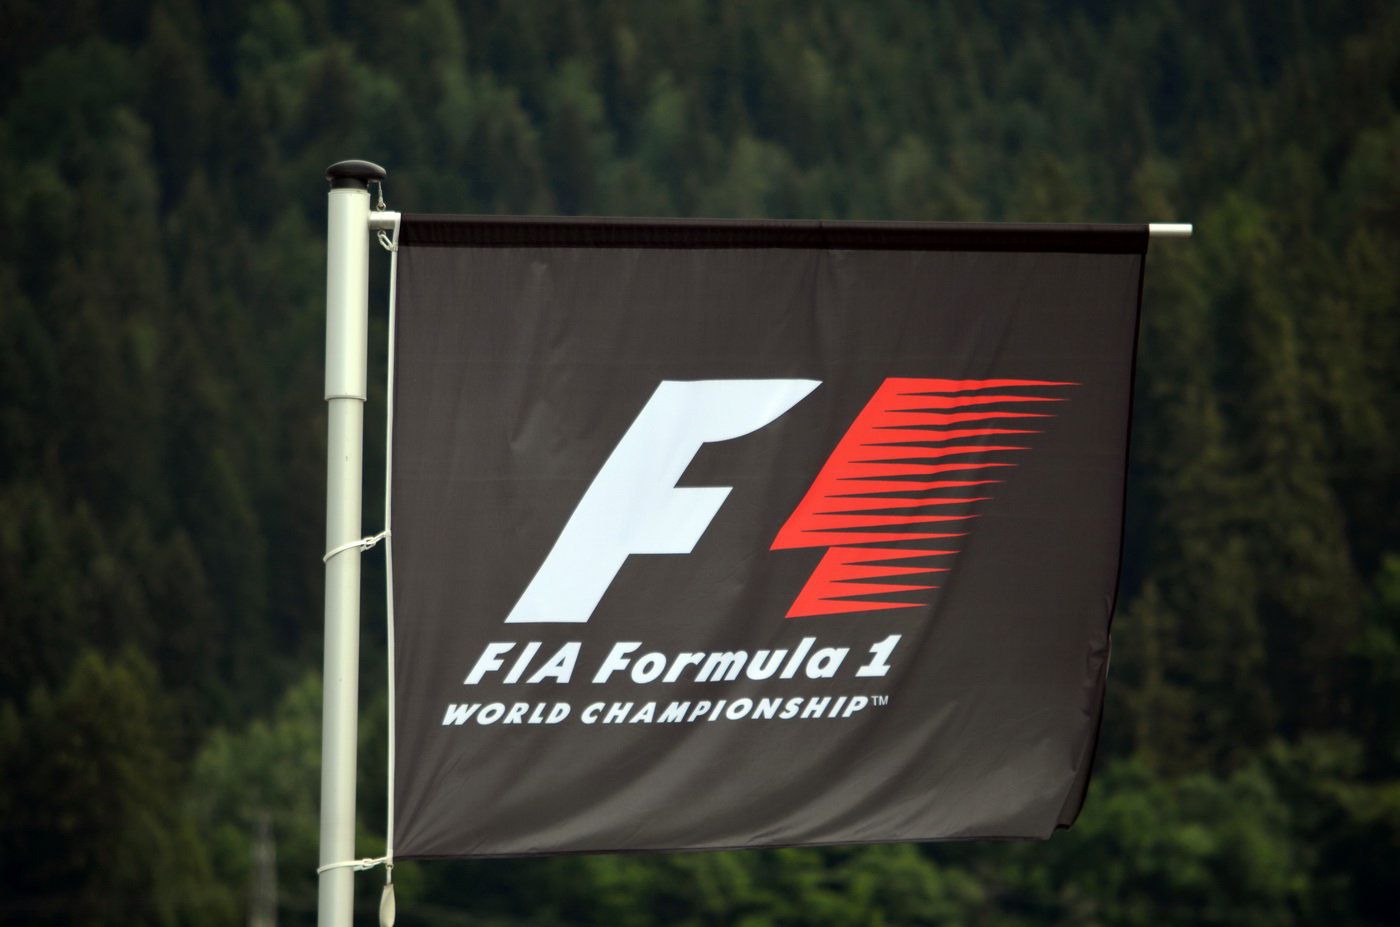 FIA Formula 1